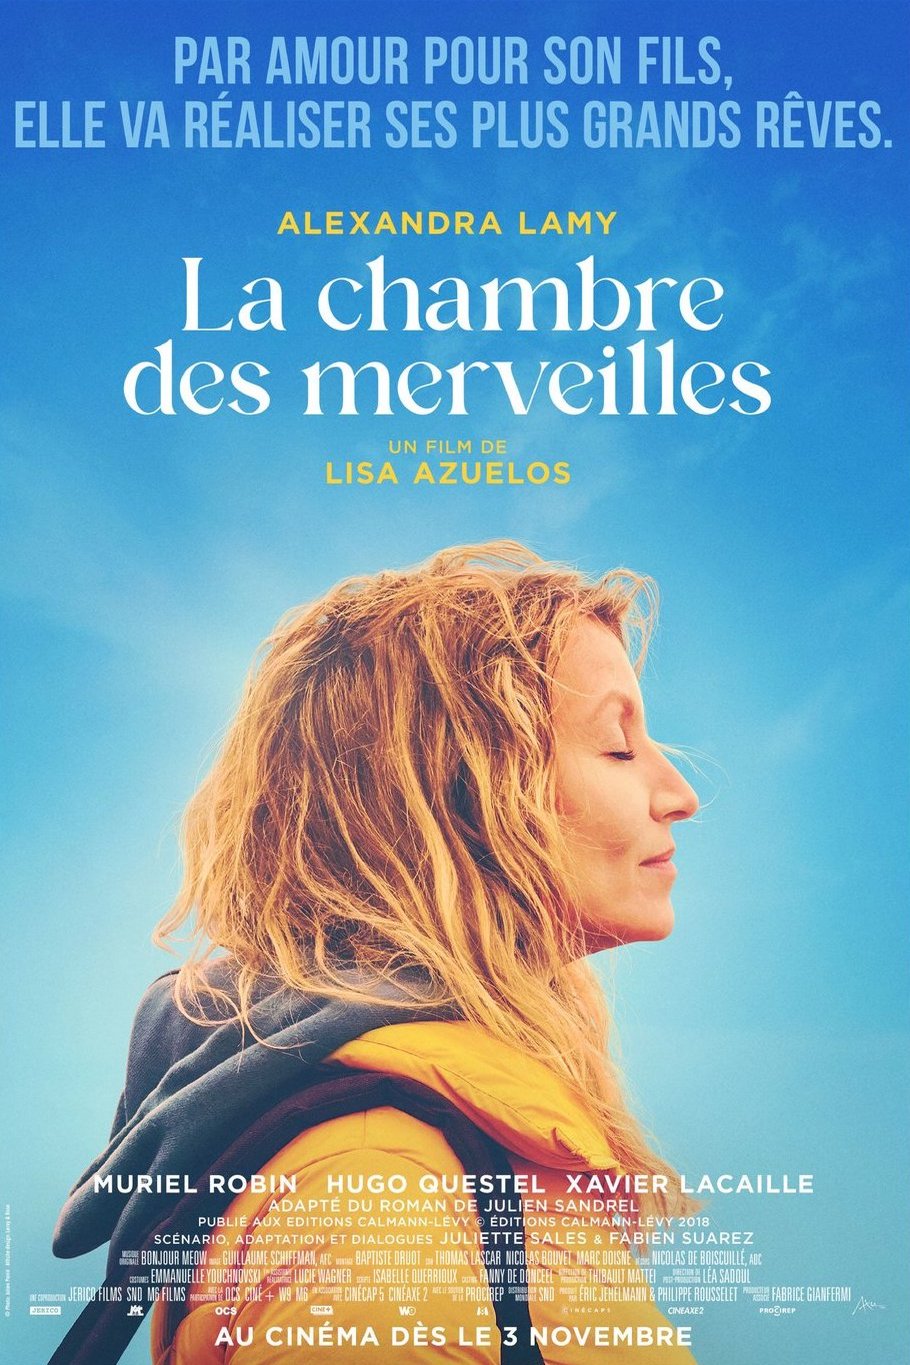 Poster of the movie La chambre des merveilles